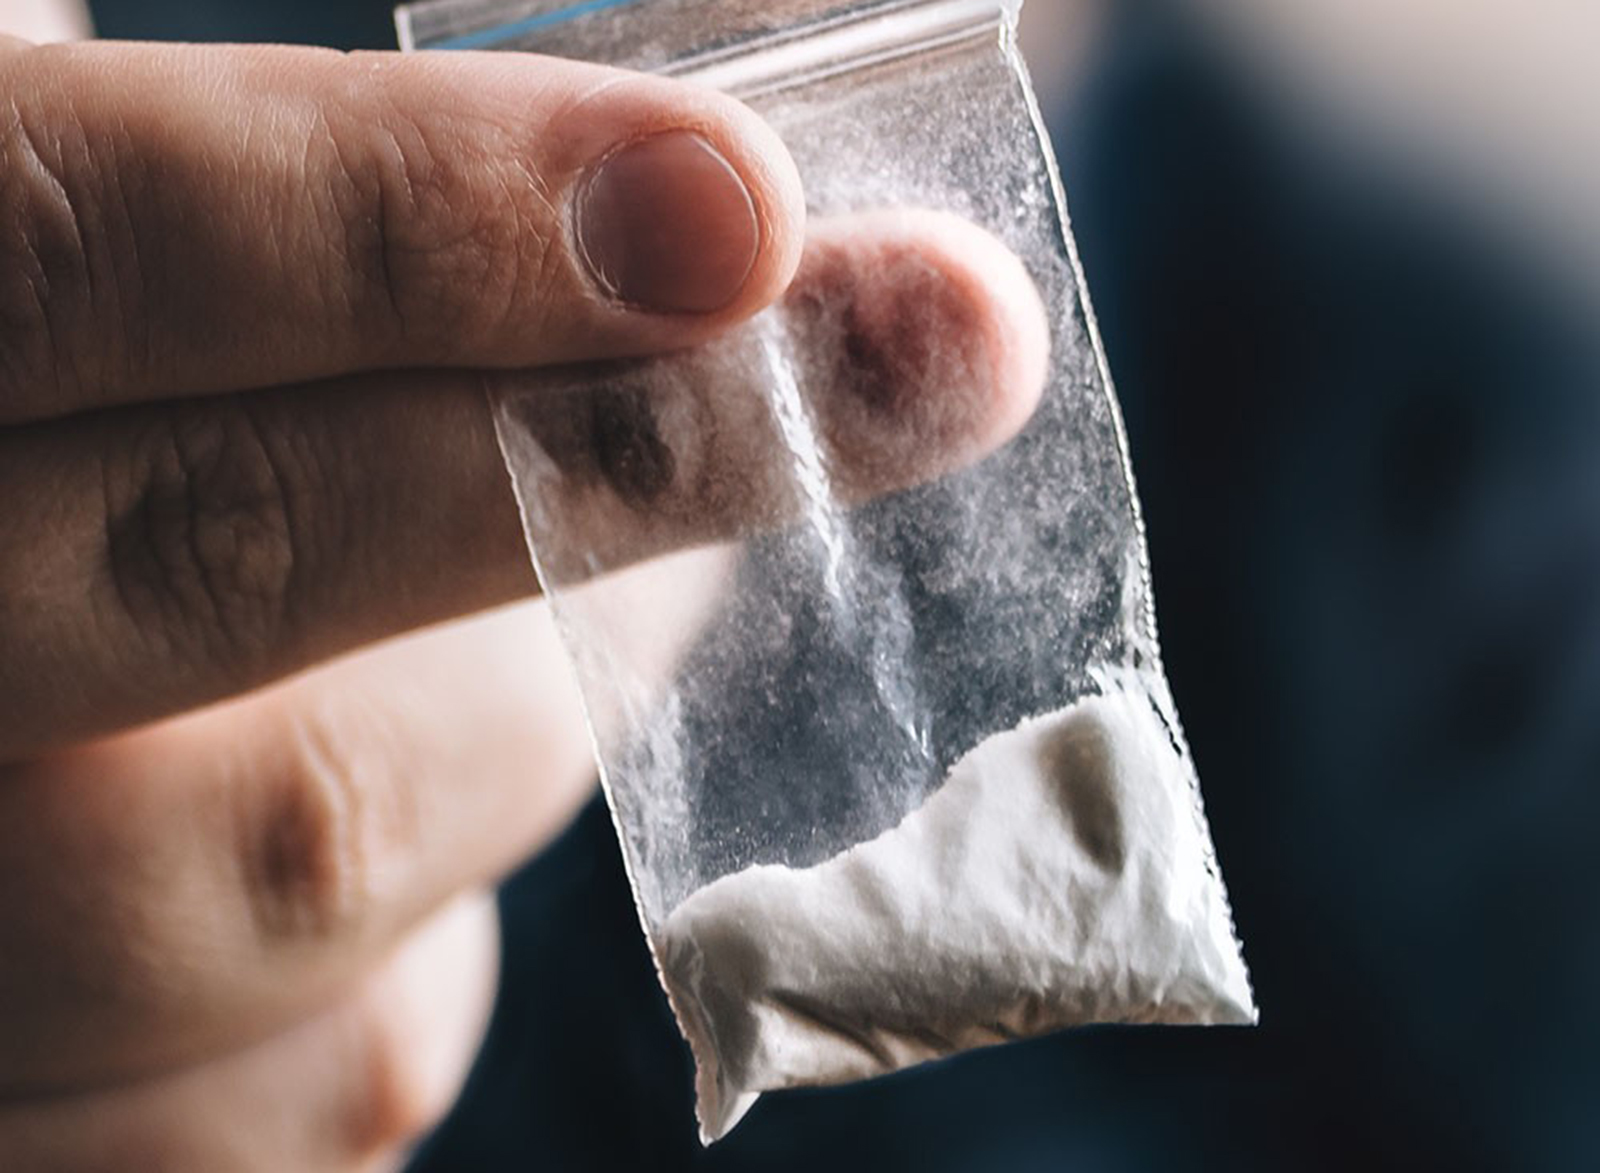 اعتقال 11 شخصاً يشتبه في تورطهم في تهريب 48 كيلوجرامًا من الكوكايين